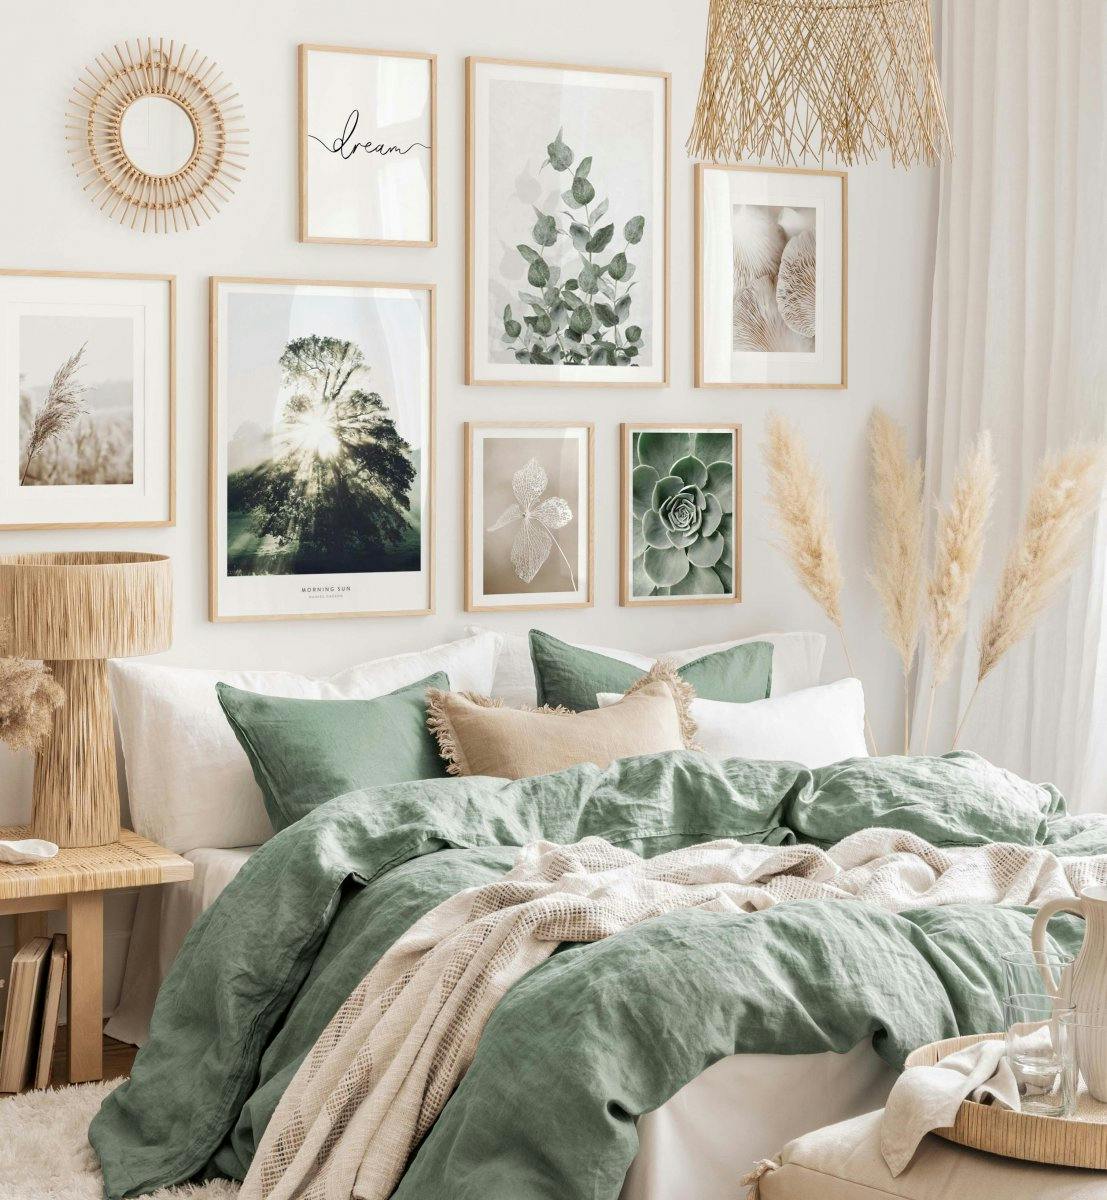 Fredfyldte beige og grønne naturfotografier til soveværelset